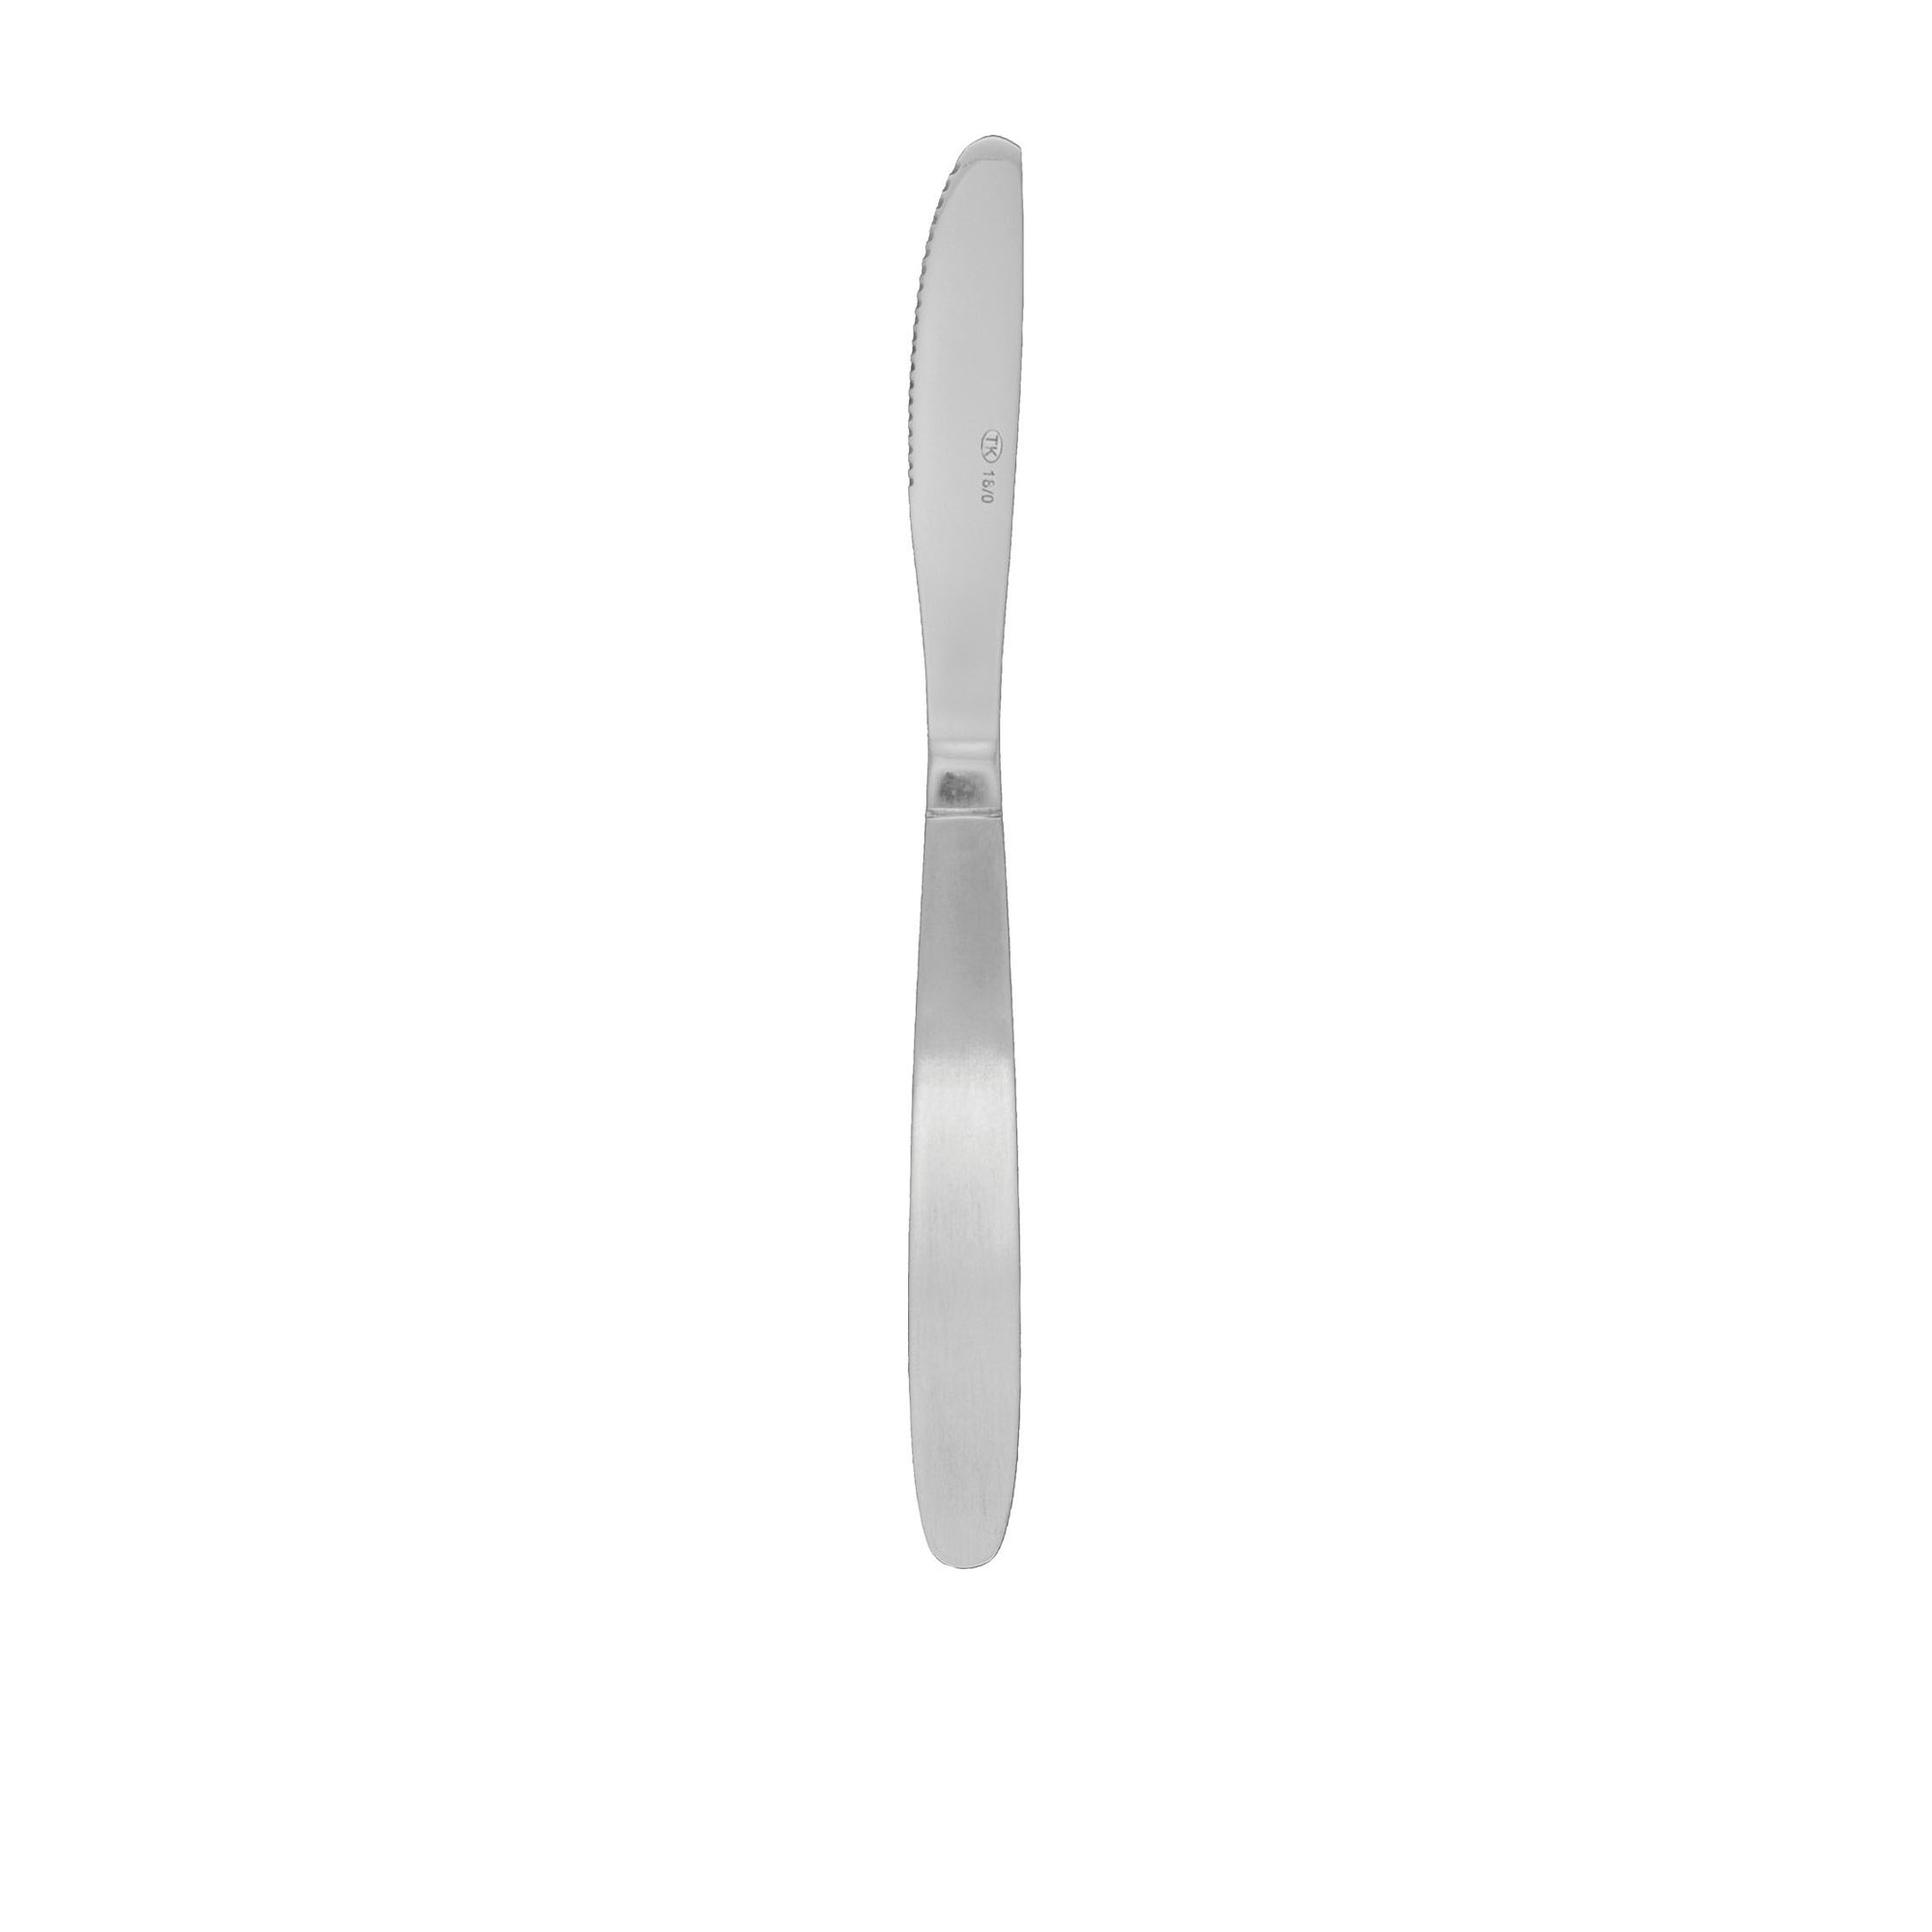 Tablekraft Austwind Table Knife Image 1